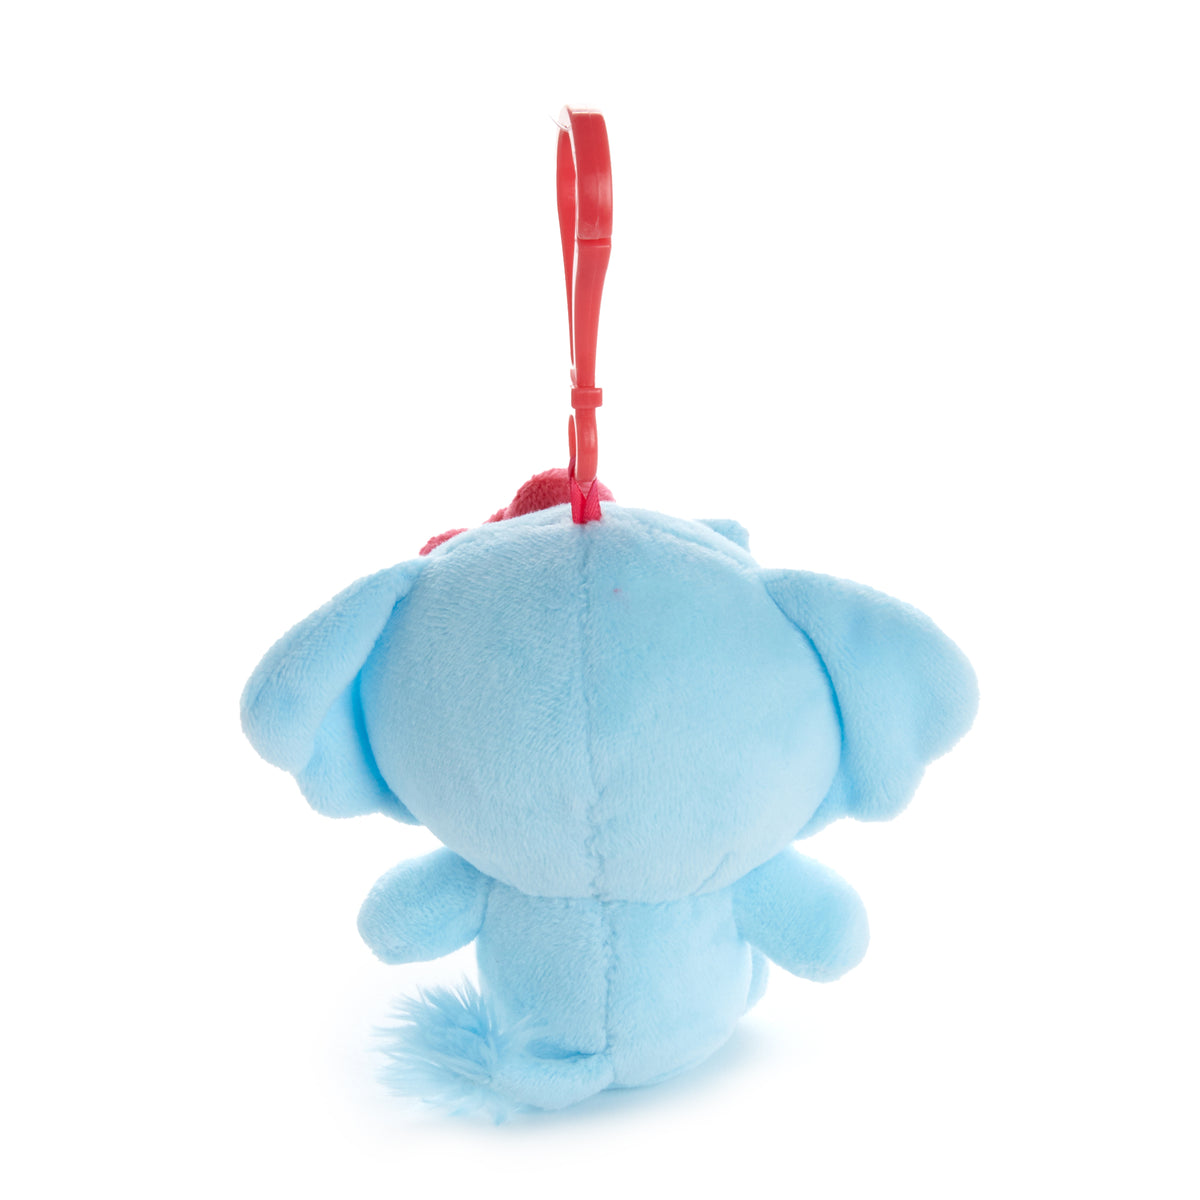 Hello Kitty Elephant Mascot Clip (Tropical Animal Series) Plush NAKAJIMA CORPORATION   